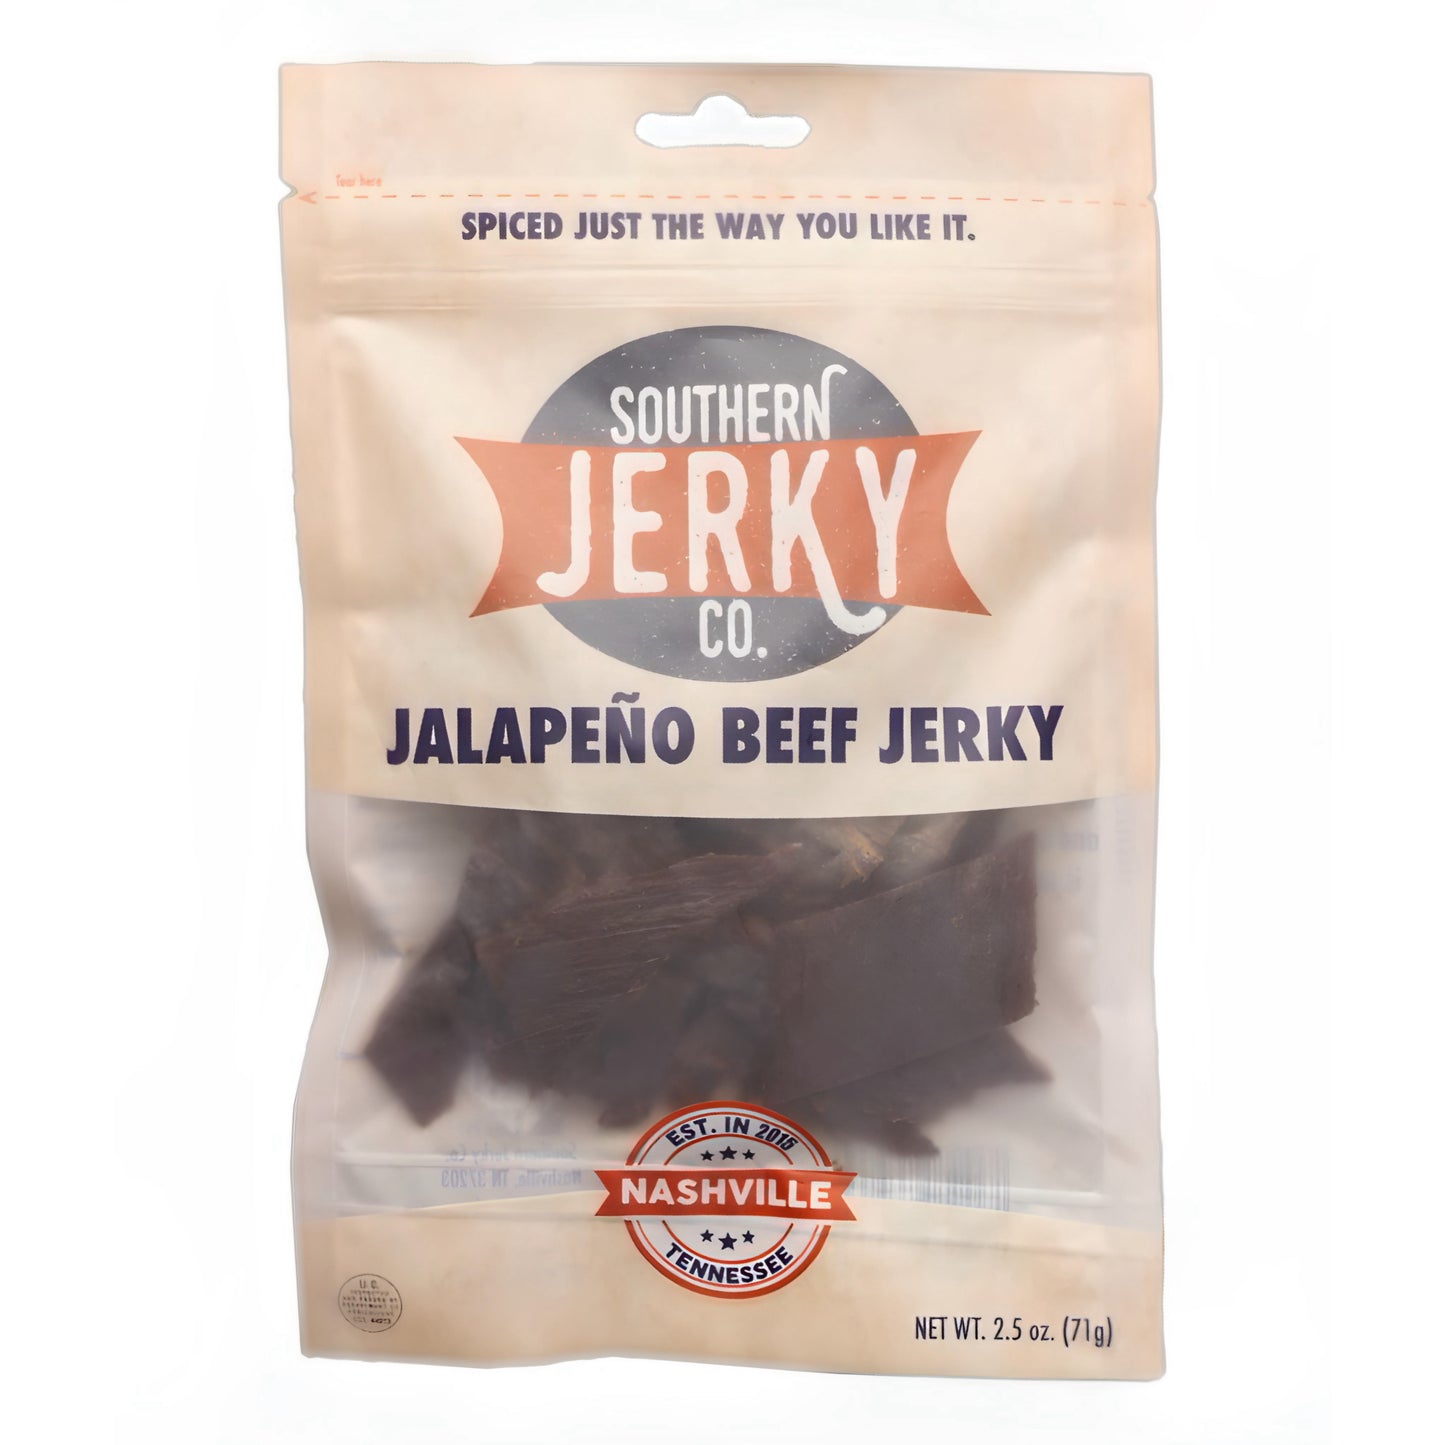 Jalapeño Beef Jerky